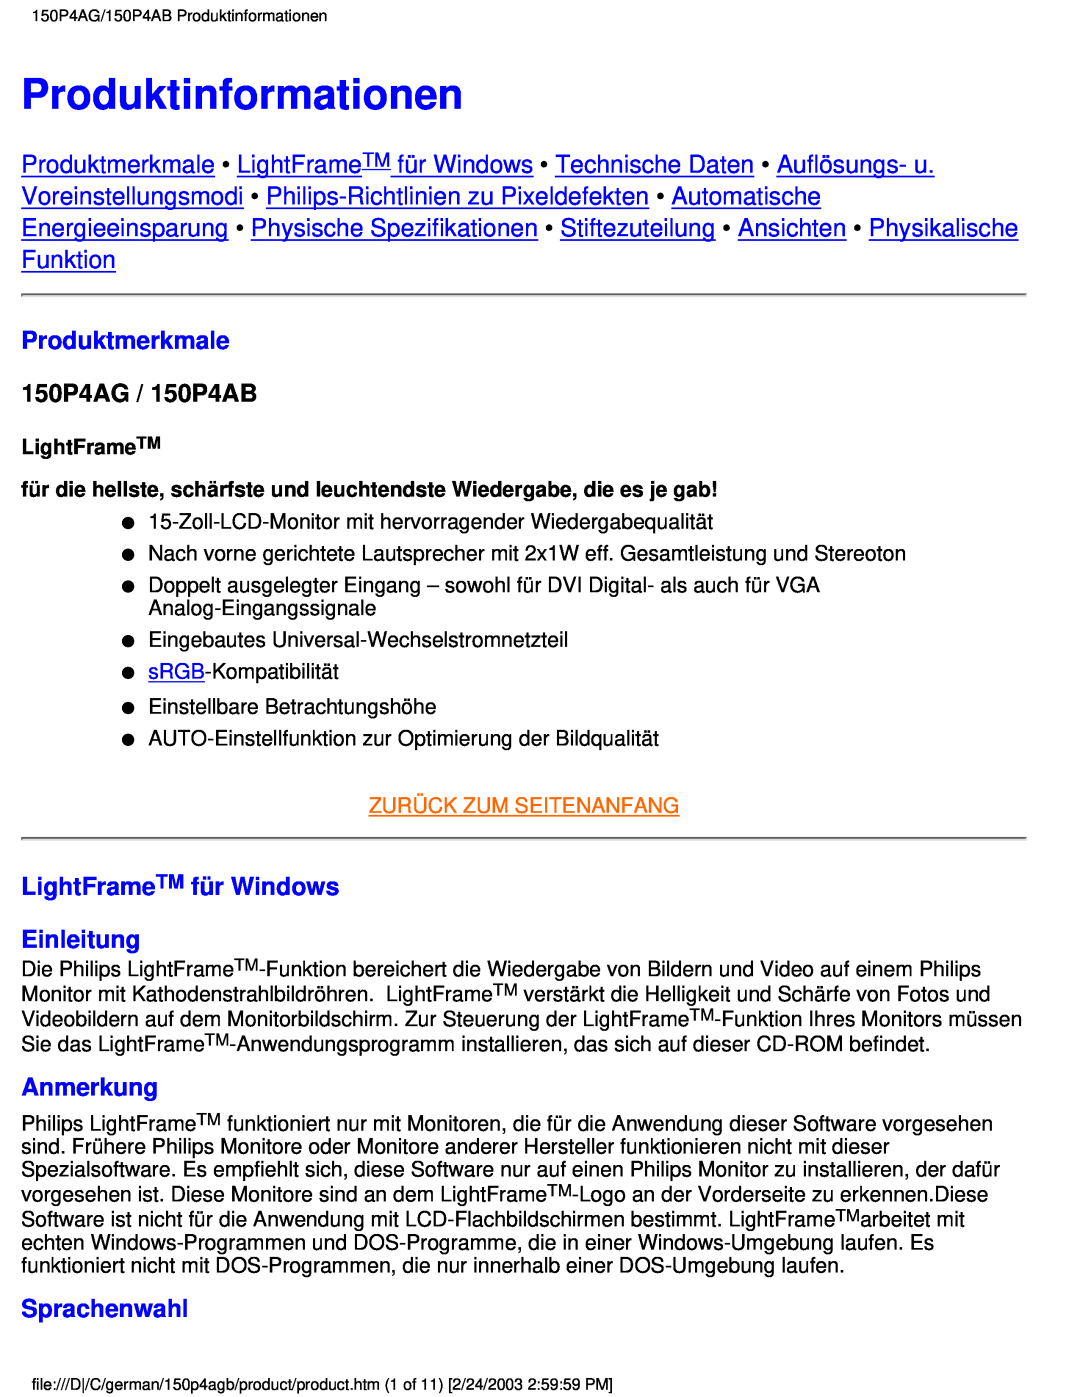 Philips Produktinformationen, Produktmerkmale, 150P4AG / 150P4AB, LightFrameTM für Windows Einleitung, Anmerkung 